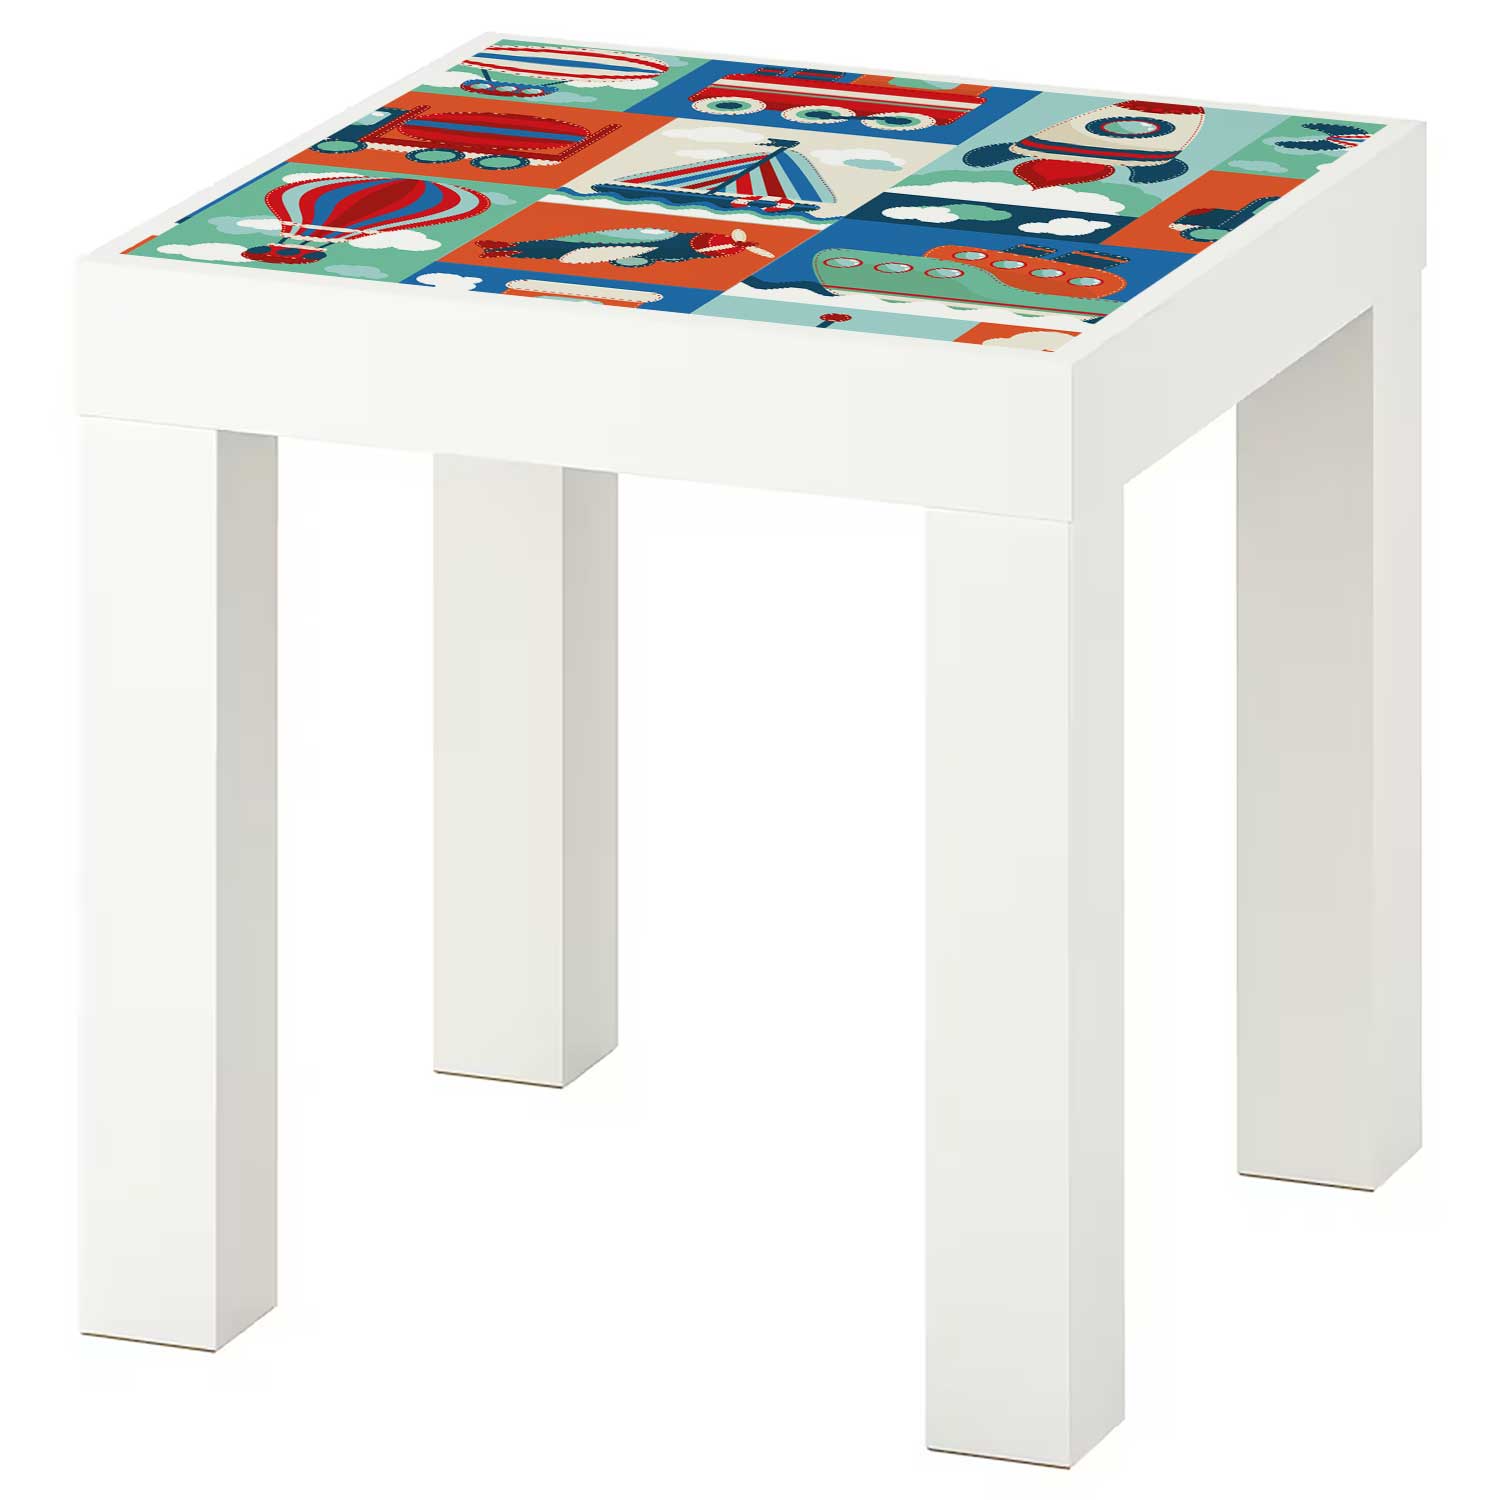 Möbelfolie Kinder für IKEA Lack Tisch 35x35 cm 'Land, Wasser & Luft'